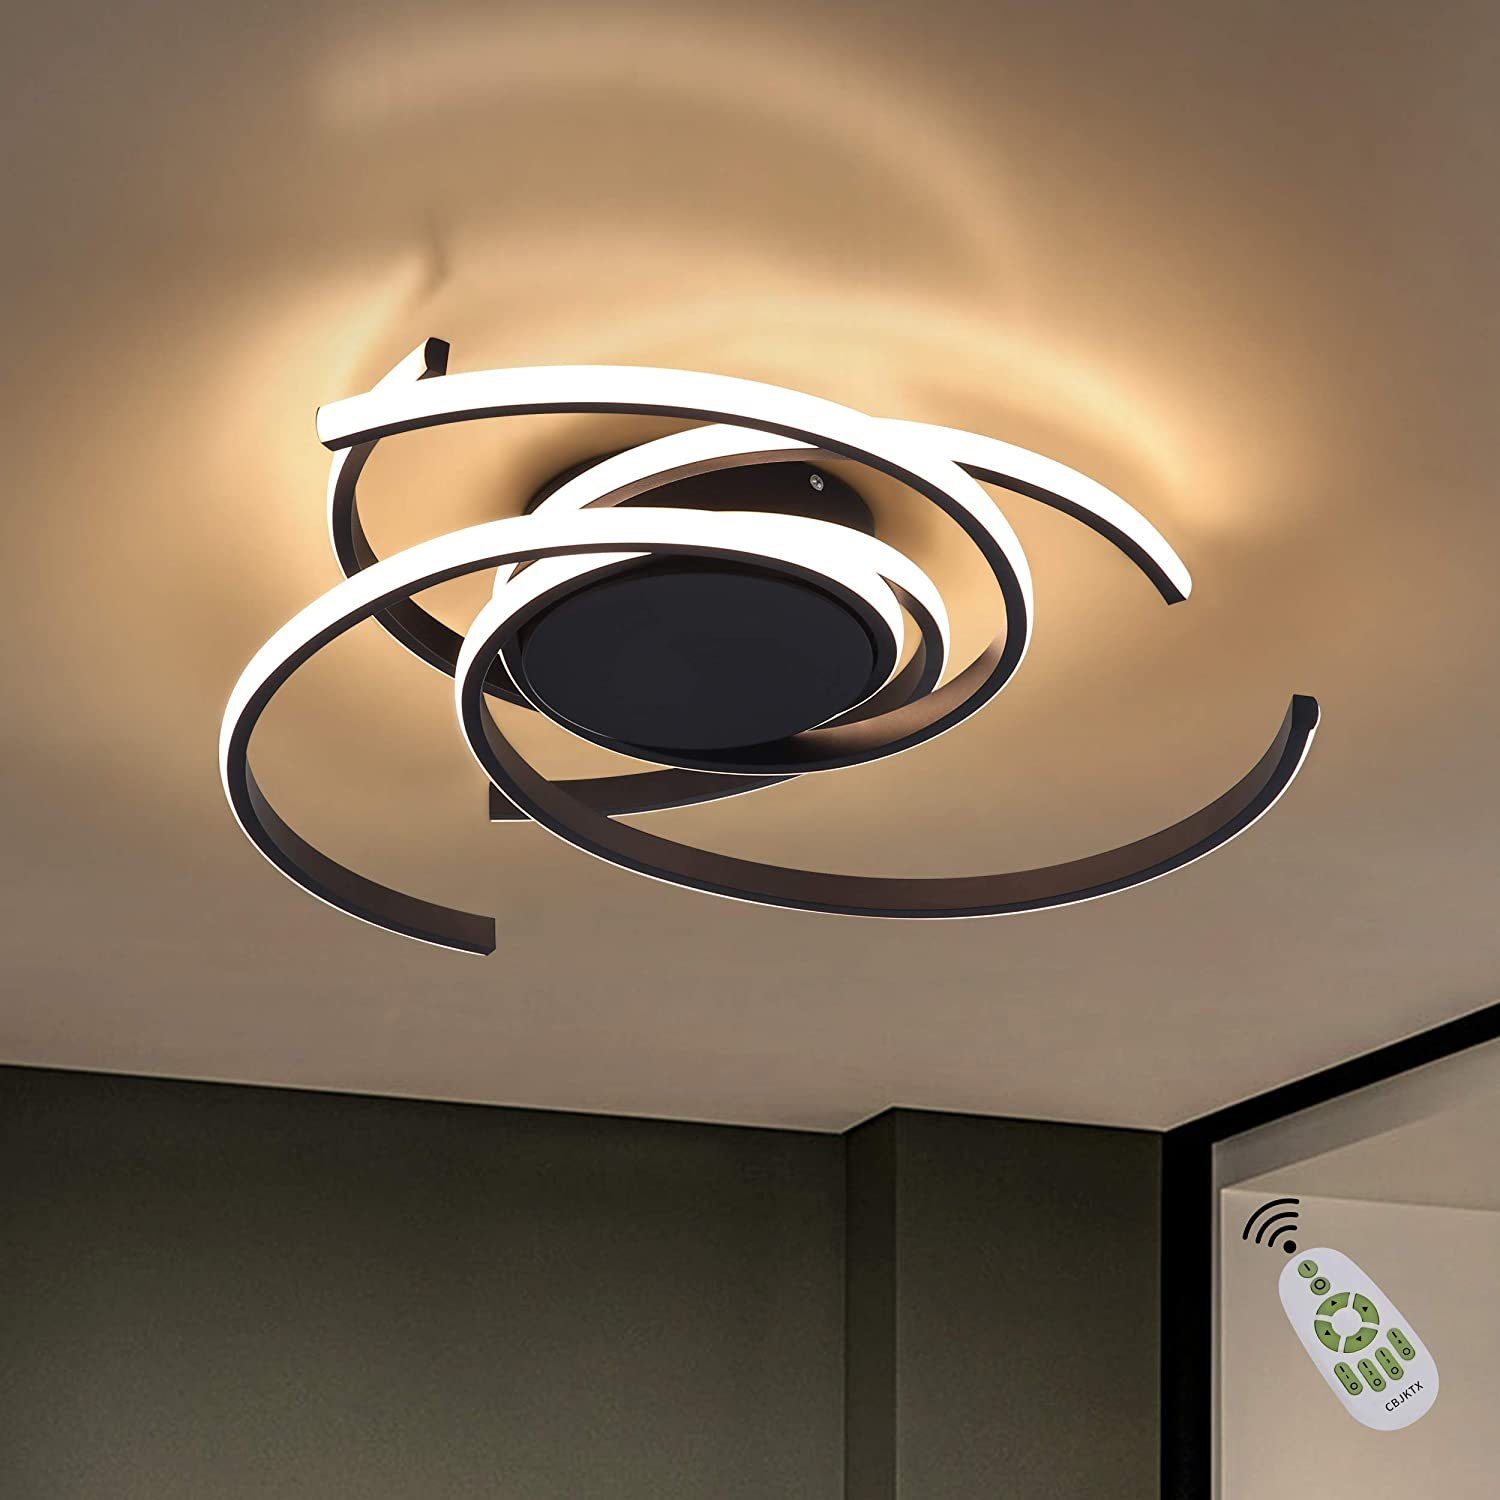 Deckenleuchte LED Deckenlampe Modern Design Wohnzimmerlampe Beleuchtung Lampe 